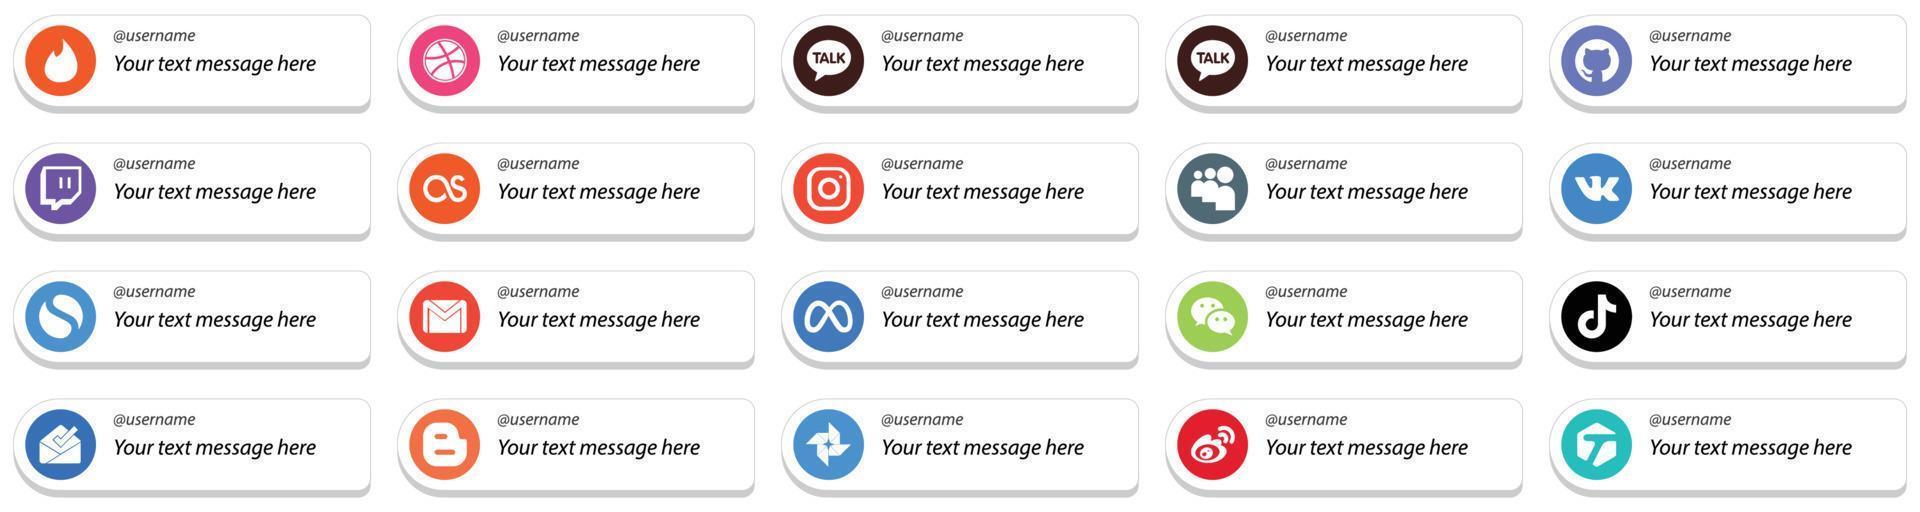 20 unico carta stile Seguire me sociale media icone con personalizzabile Messaggio come come wechat. meta. posta e gmail icone. occhio attraente e alto definizione vettore